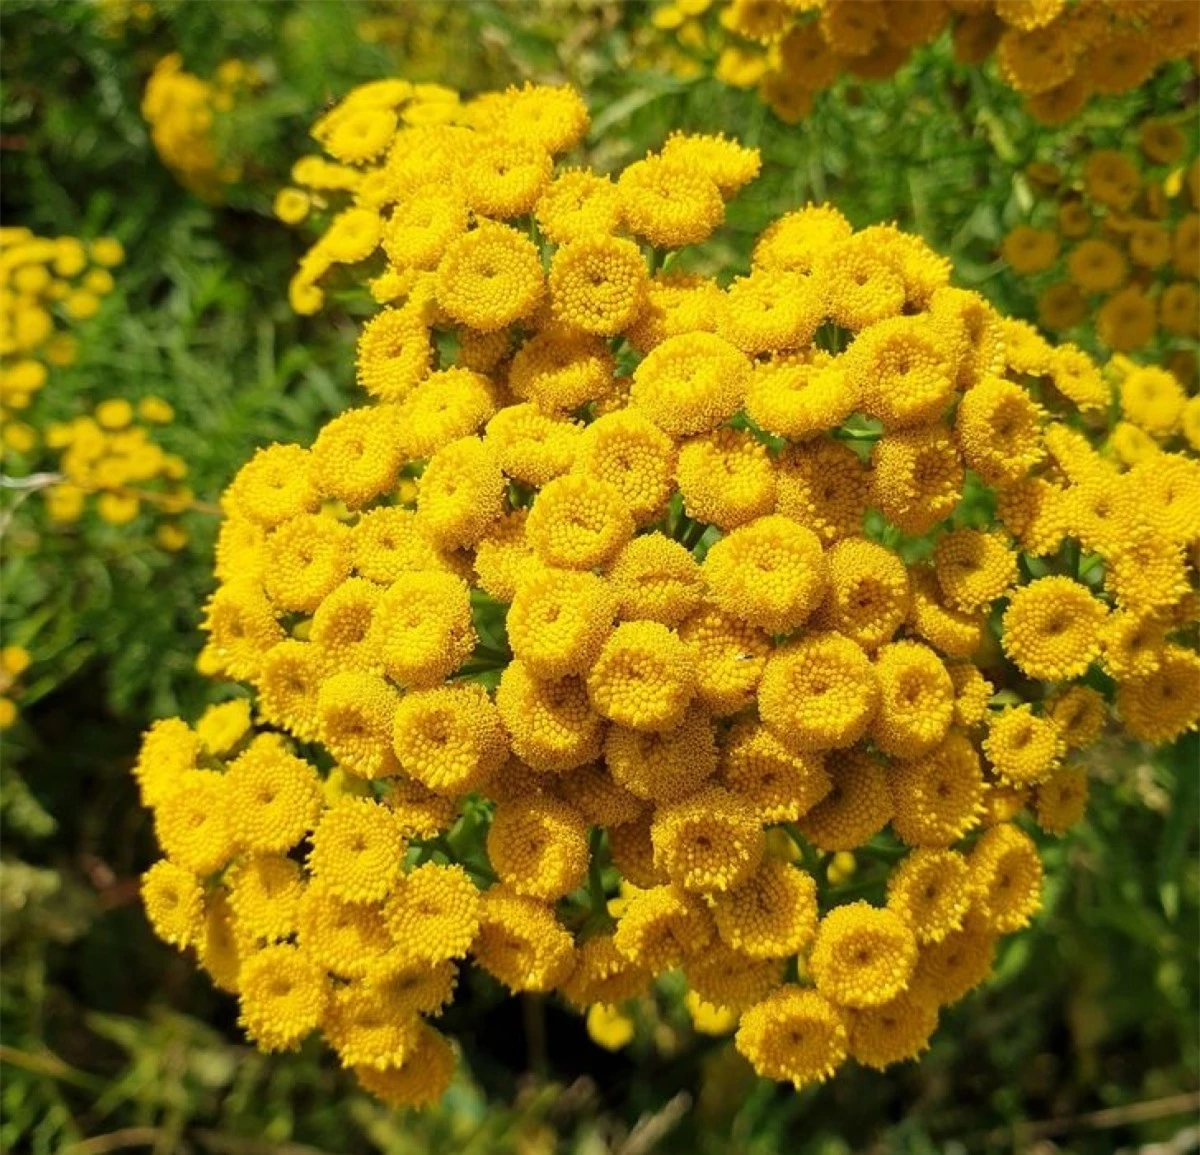 Với những bông hoa màu vàng tươi,cúc hương ngải nổi tiếng với tác dụng đuổi ruồi.Bạn có thể chà xát lá lên da hoặc để trong nhà.Mùi thơm sẽ được tỏa ra và ruồi sẽ không vào nhà./